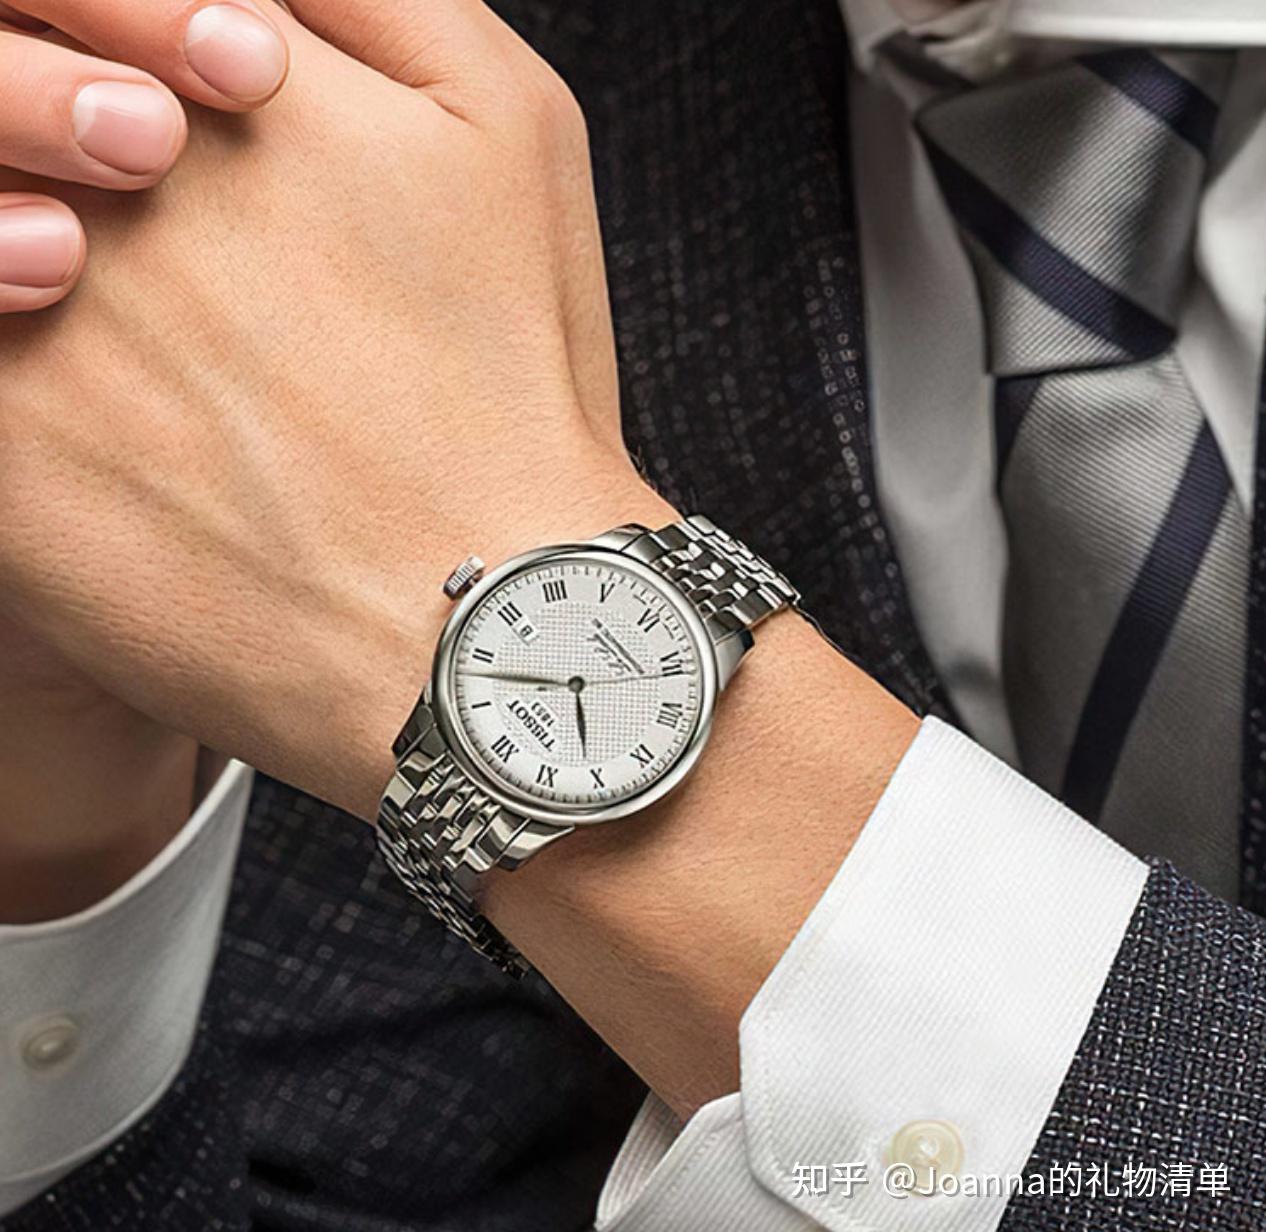 30岁到40岁左右的男士一般是出席商业场合比较多,一款合适的商务手表